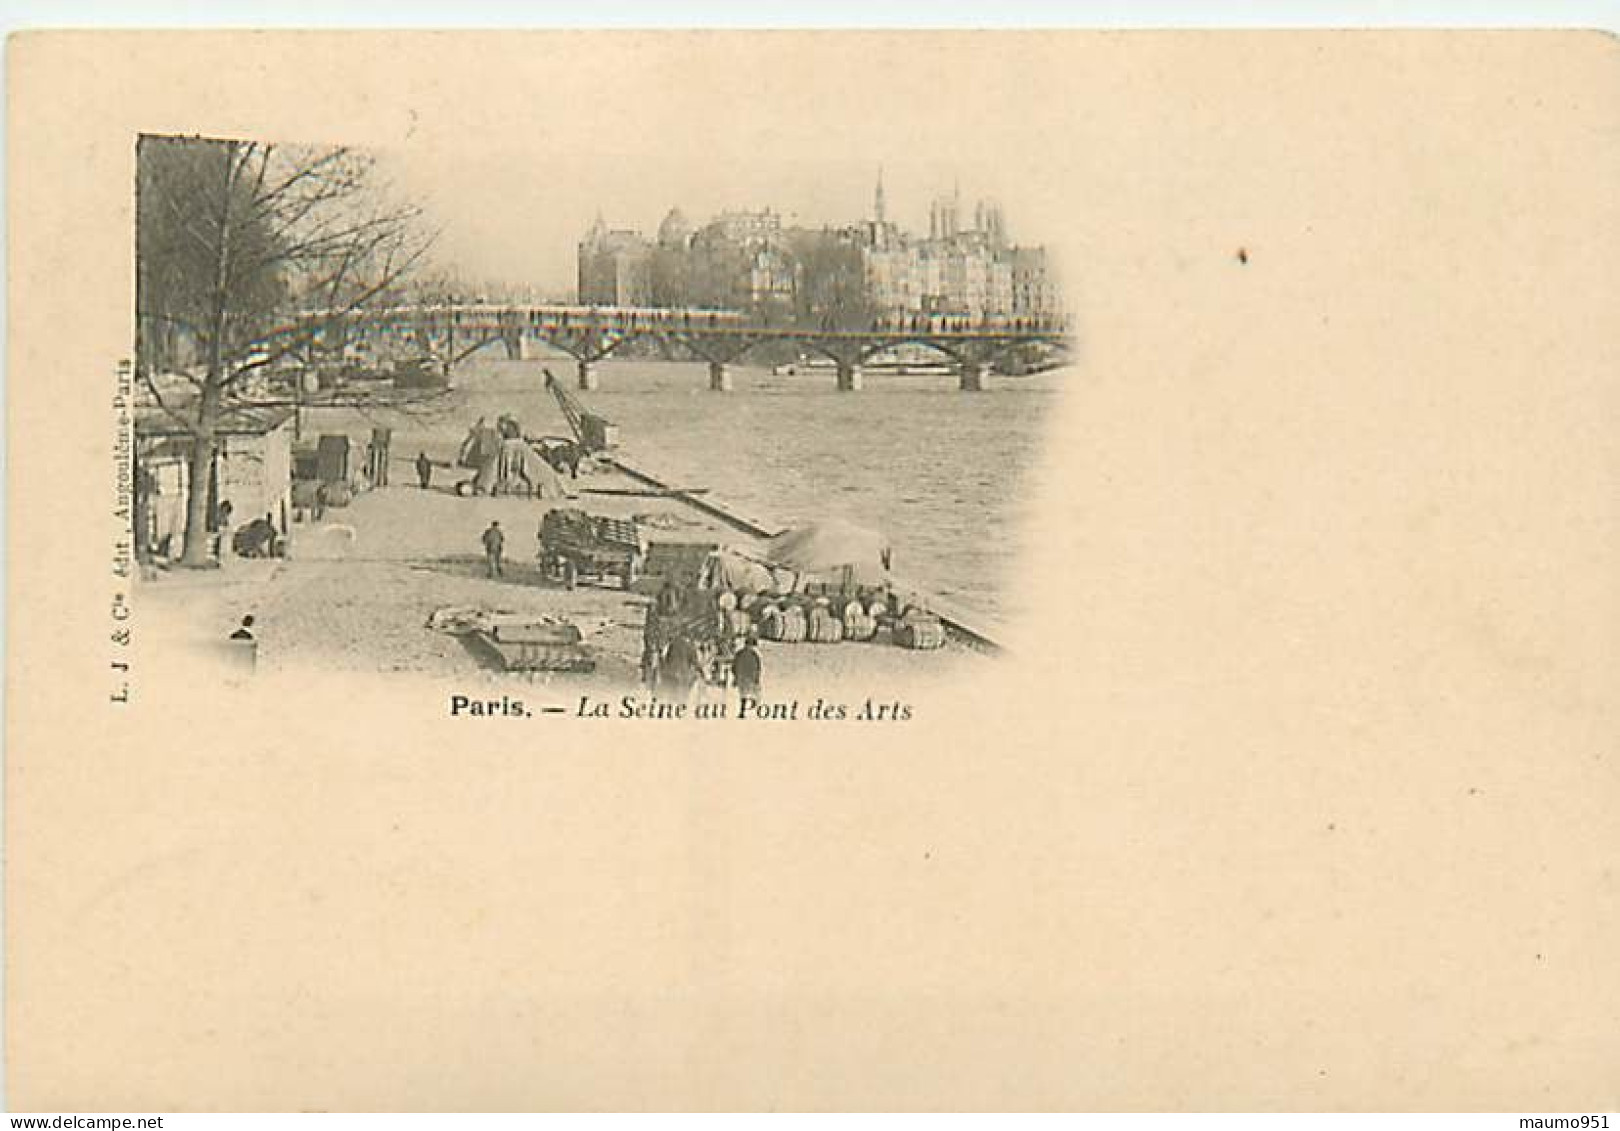 75 PARIS - Lot de 19 cartes diverses